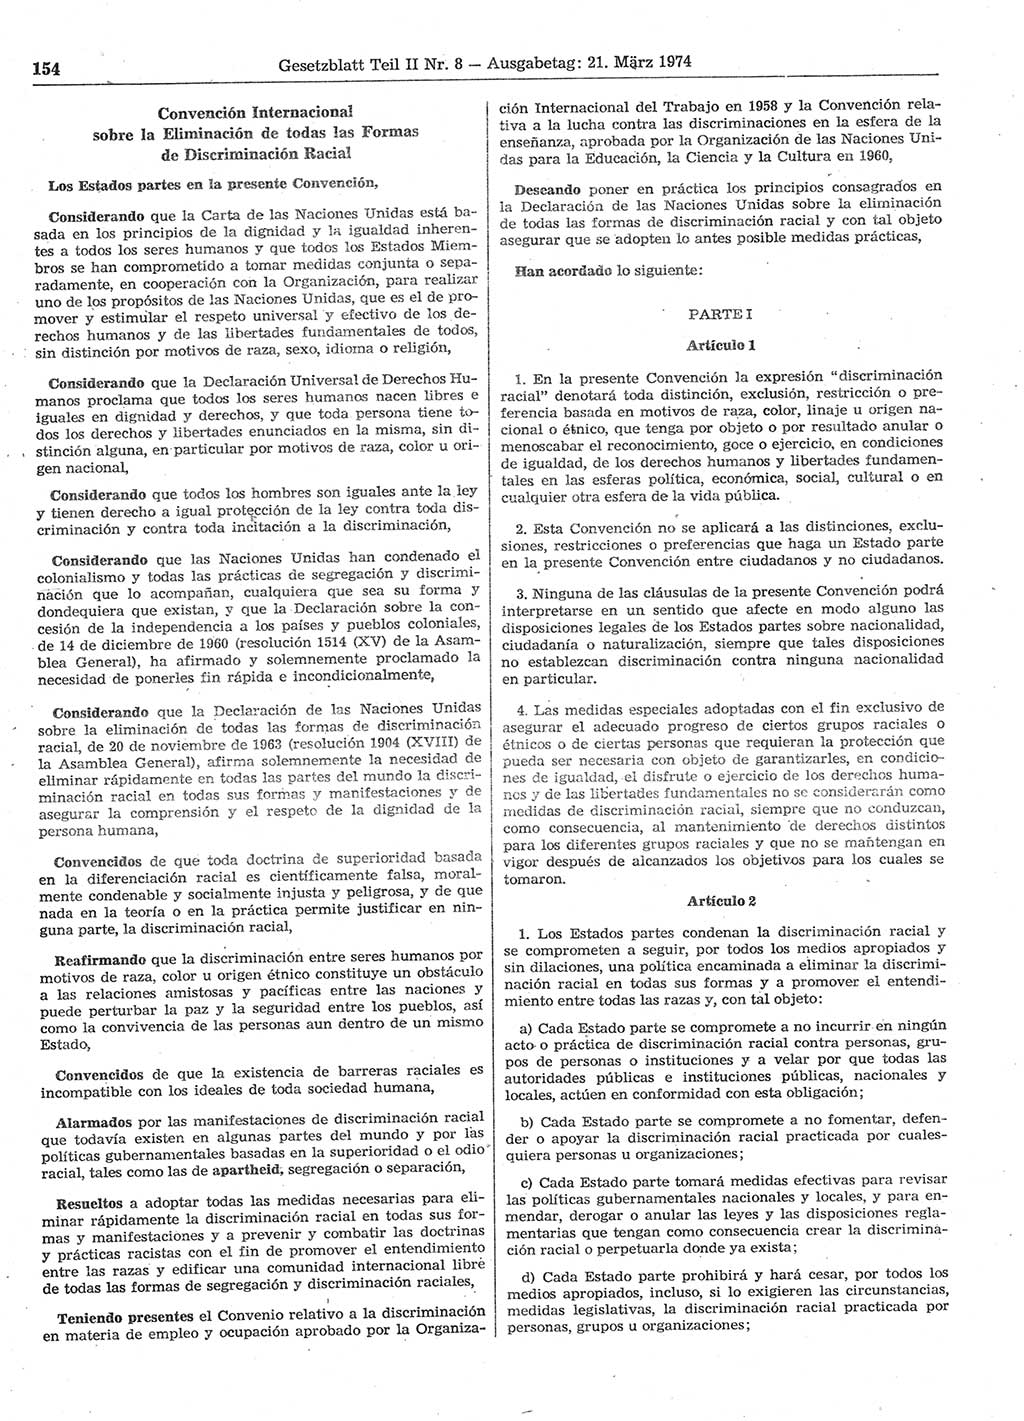 Gesetzblatt (GBl.) der Deutschen Demokratischen Republik (DDR) Teil ⅠⅠ 1974, Seite 154 (GBl. DDR ⅠⅠ 1974, S. 154)